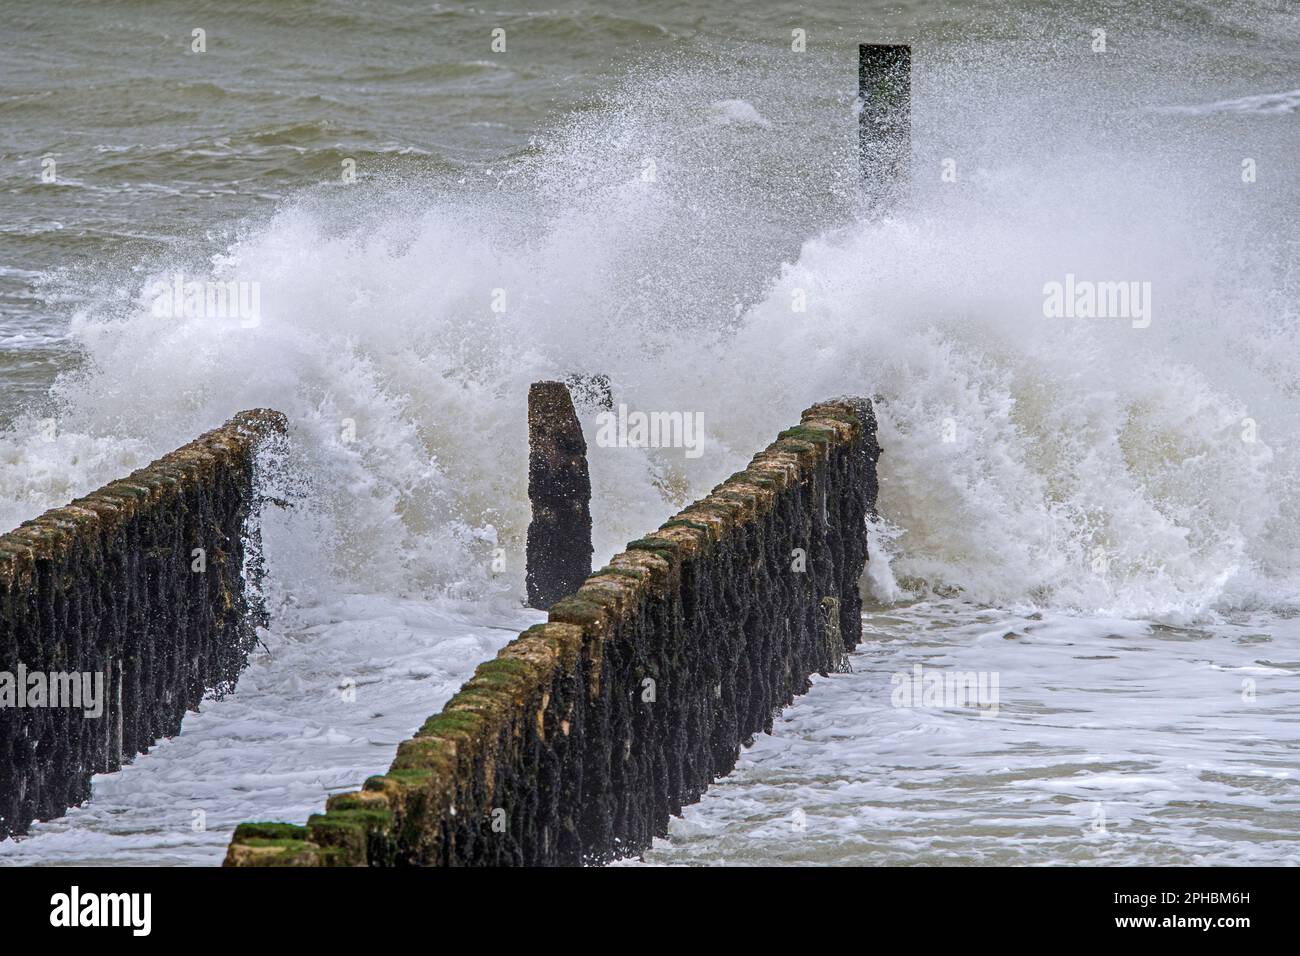 Wellen, die in Holz-Gryne/Wellenbrecher stürzen, um die Erosion des Strandes während des Wintersturms entlang der Nordseeküste in Zeeland, Niederlande, zu vermeiden Stockfoto